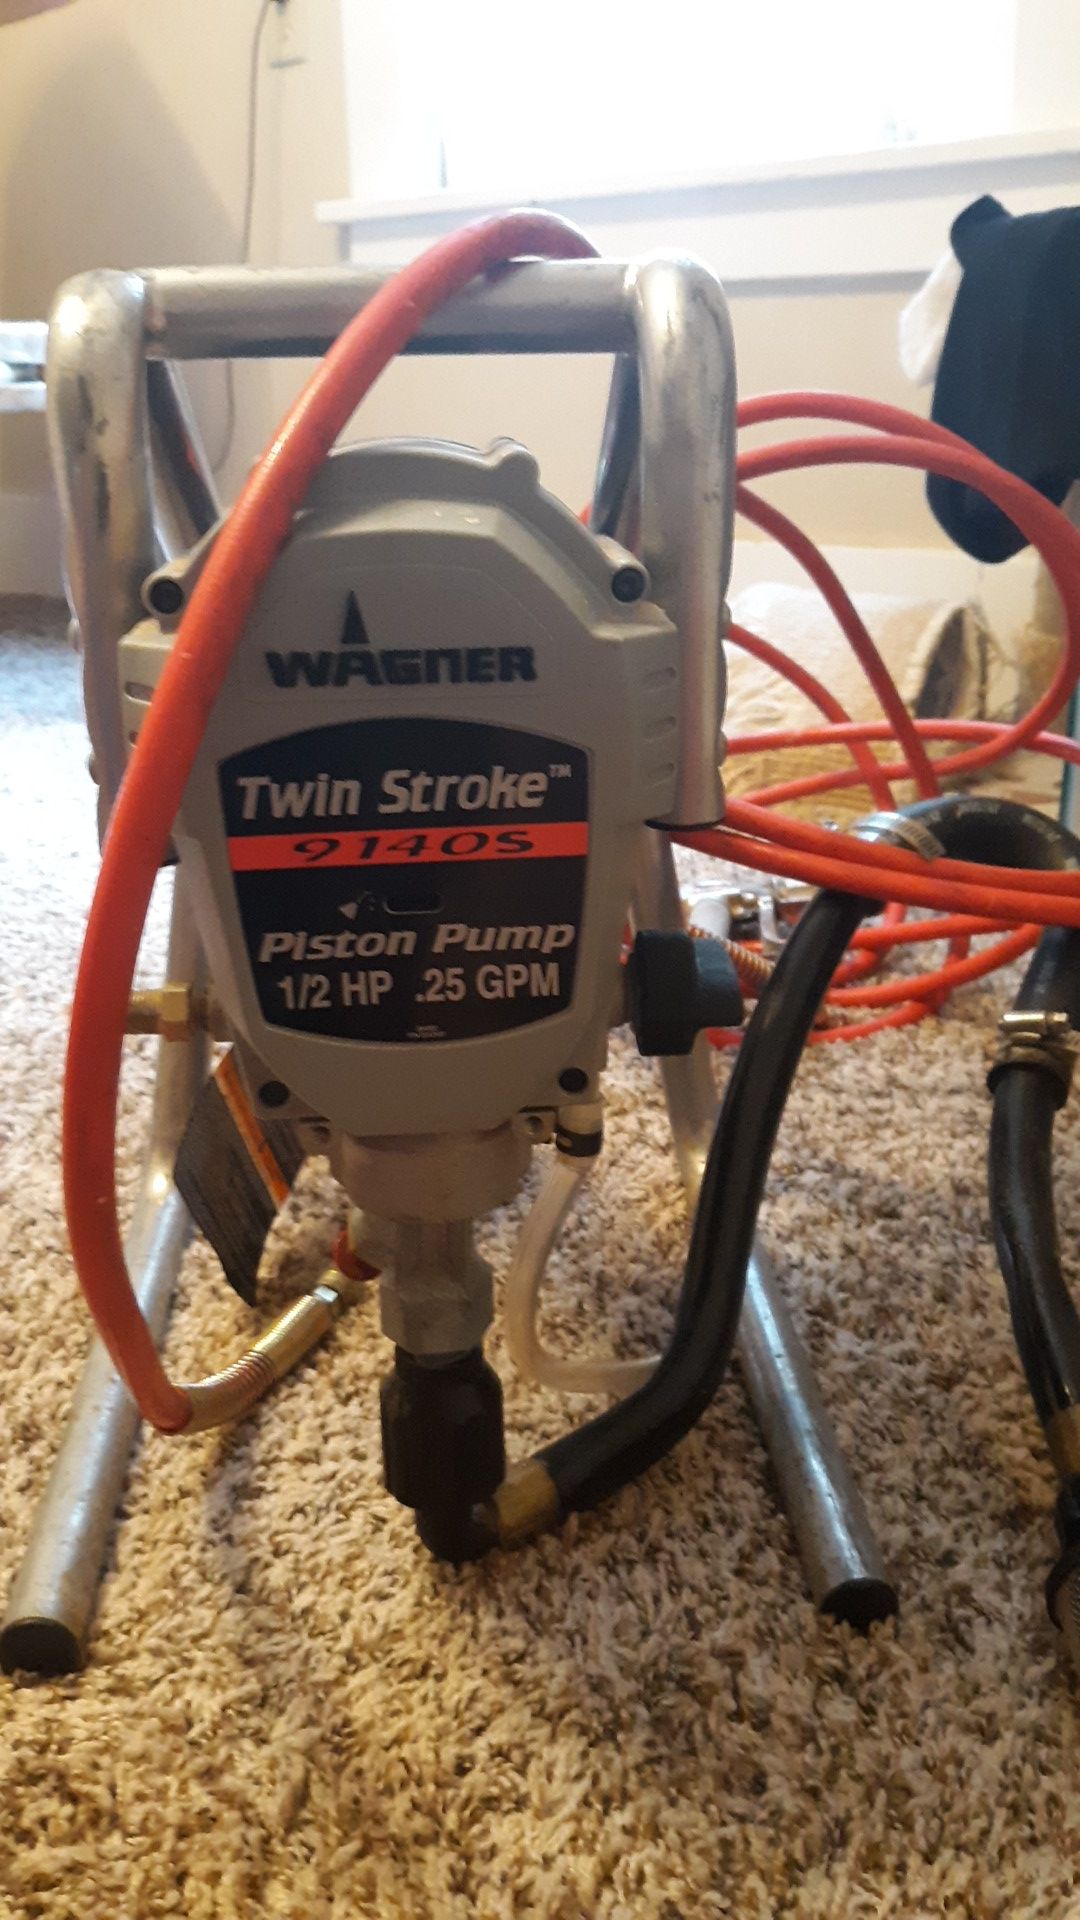 Paint sprayer~Wagner twin stroke piston pump